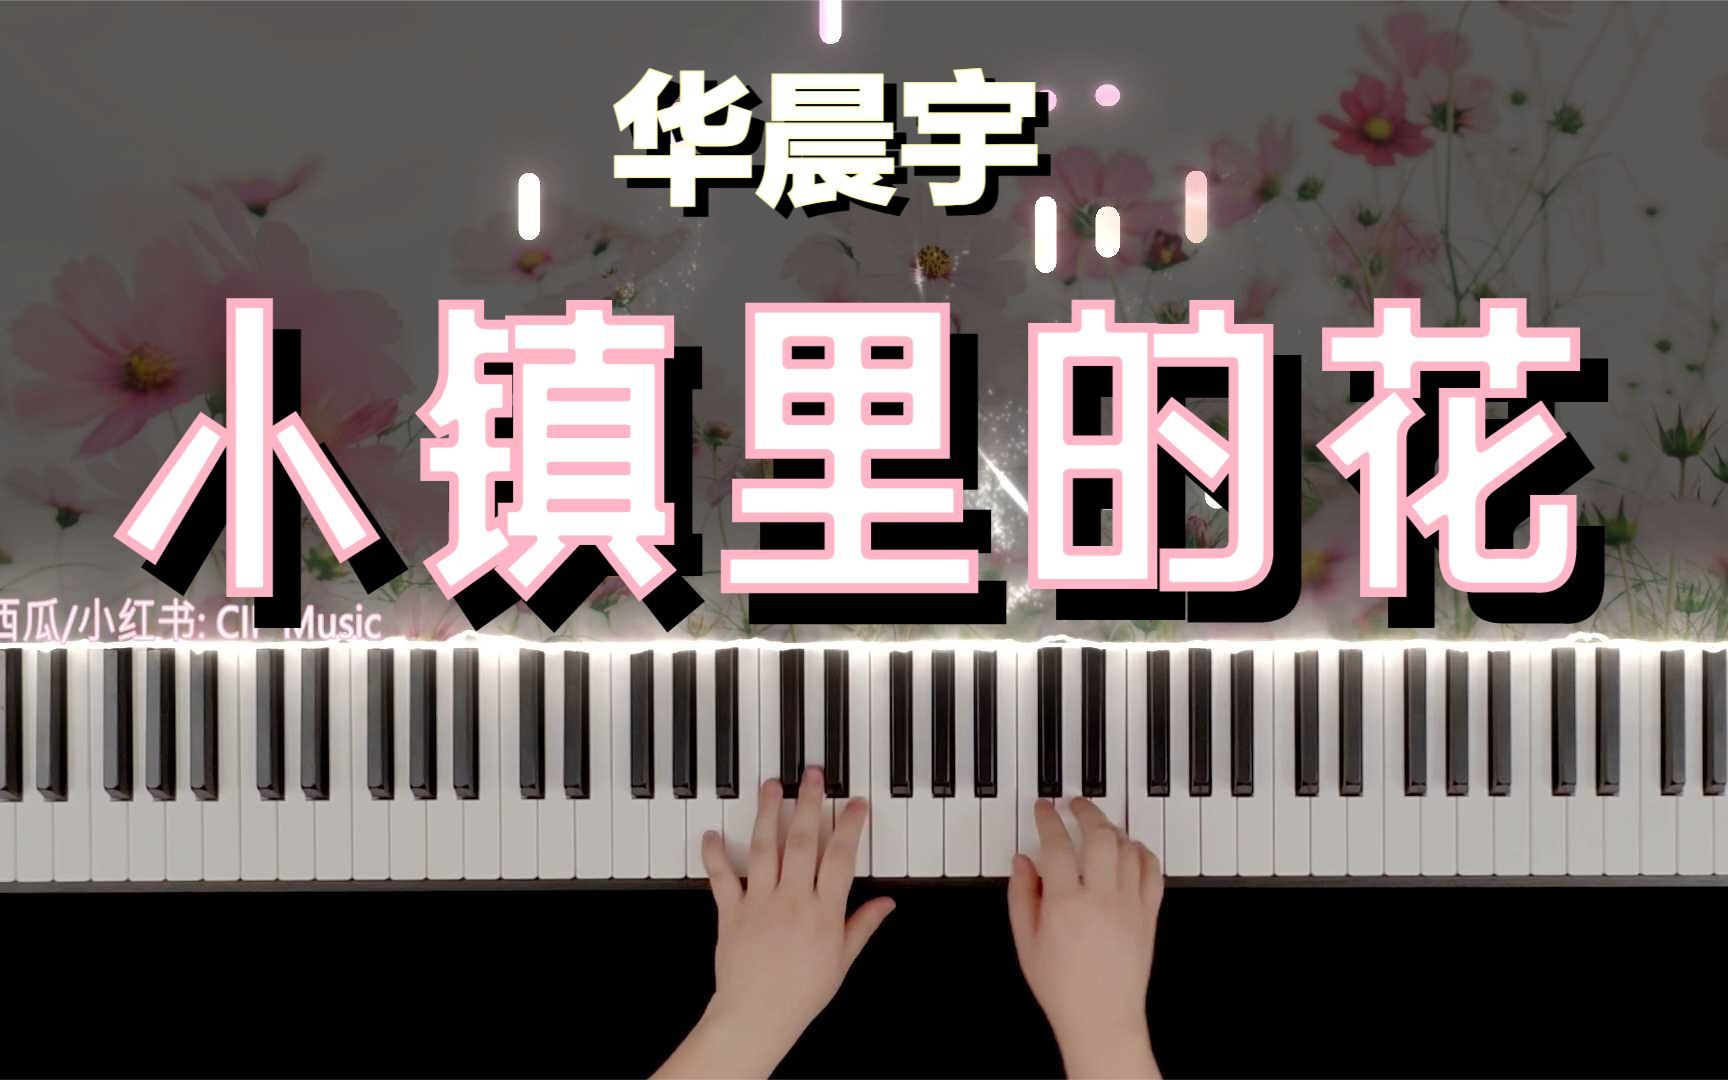 【钢琴】《小镇里的花》抒情版 华晨宇